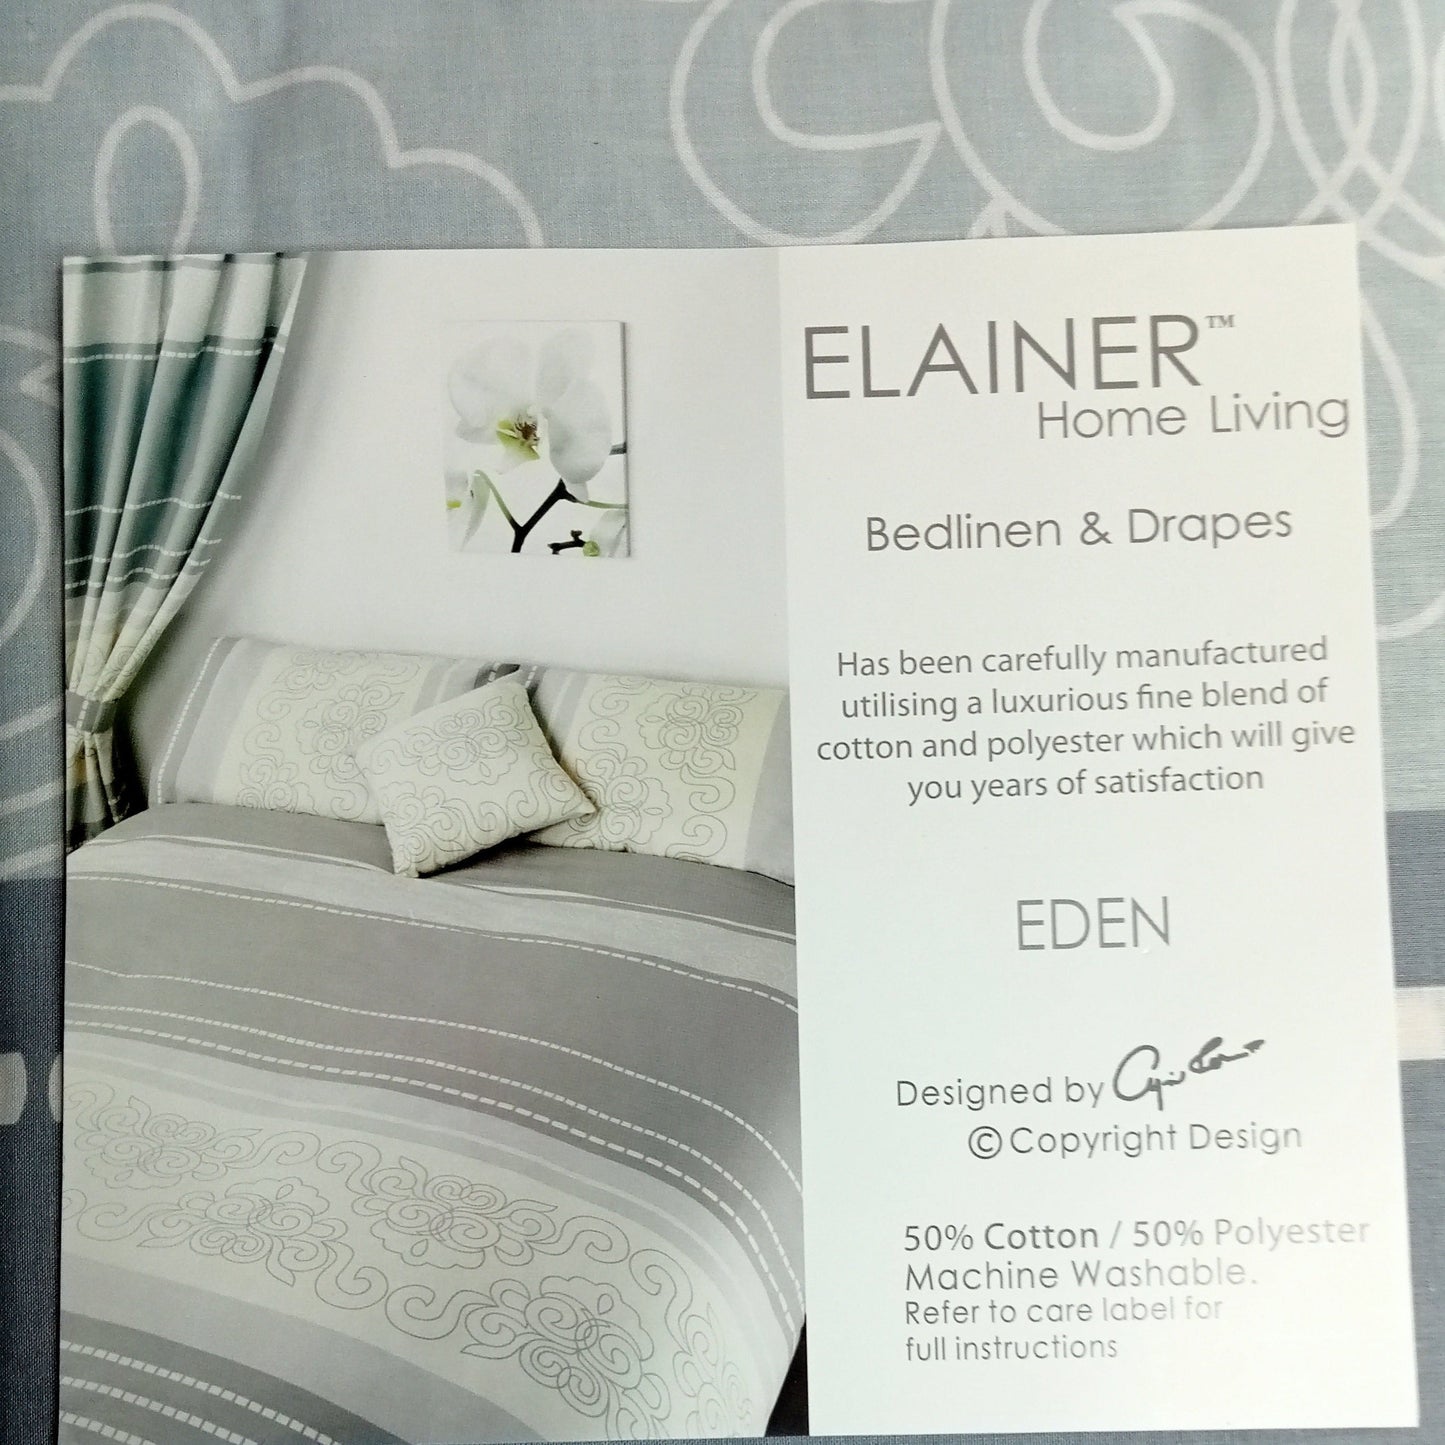 Eden Duvet Set by Elainer Home Living